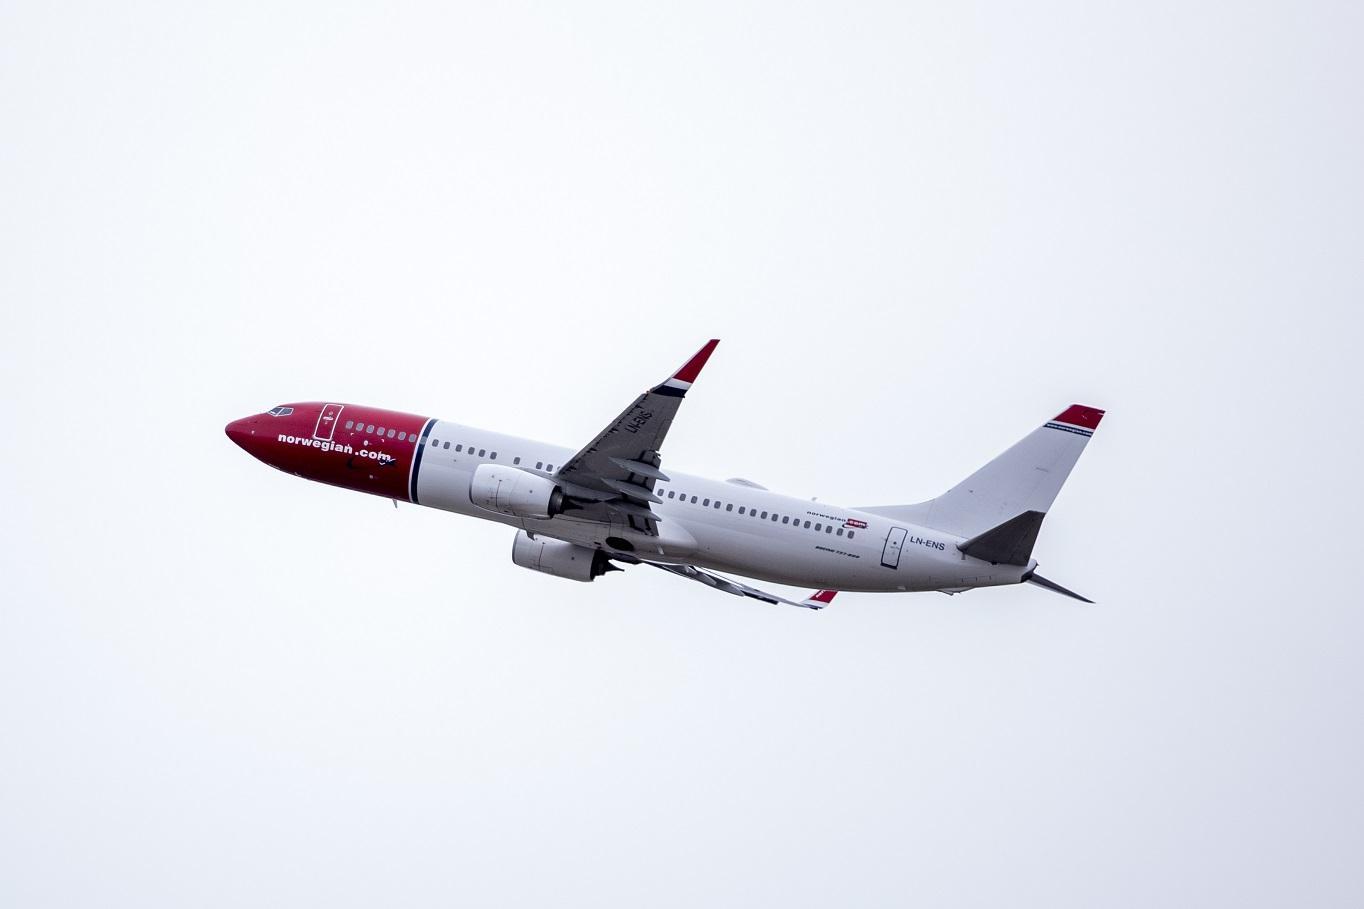 Molde Lufthavn Årø